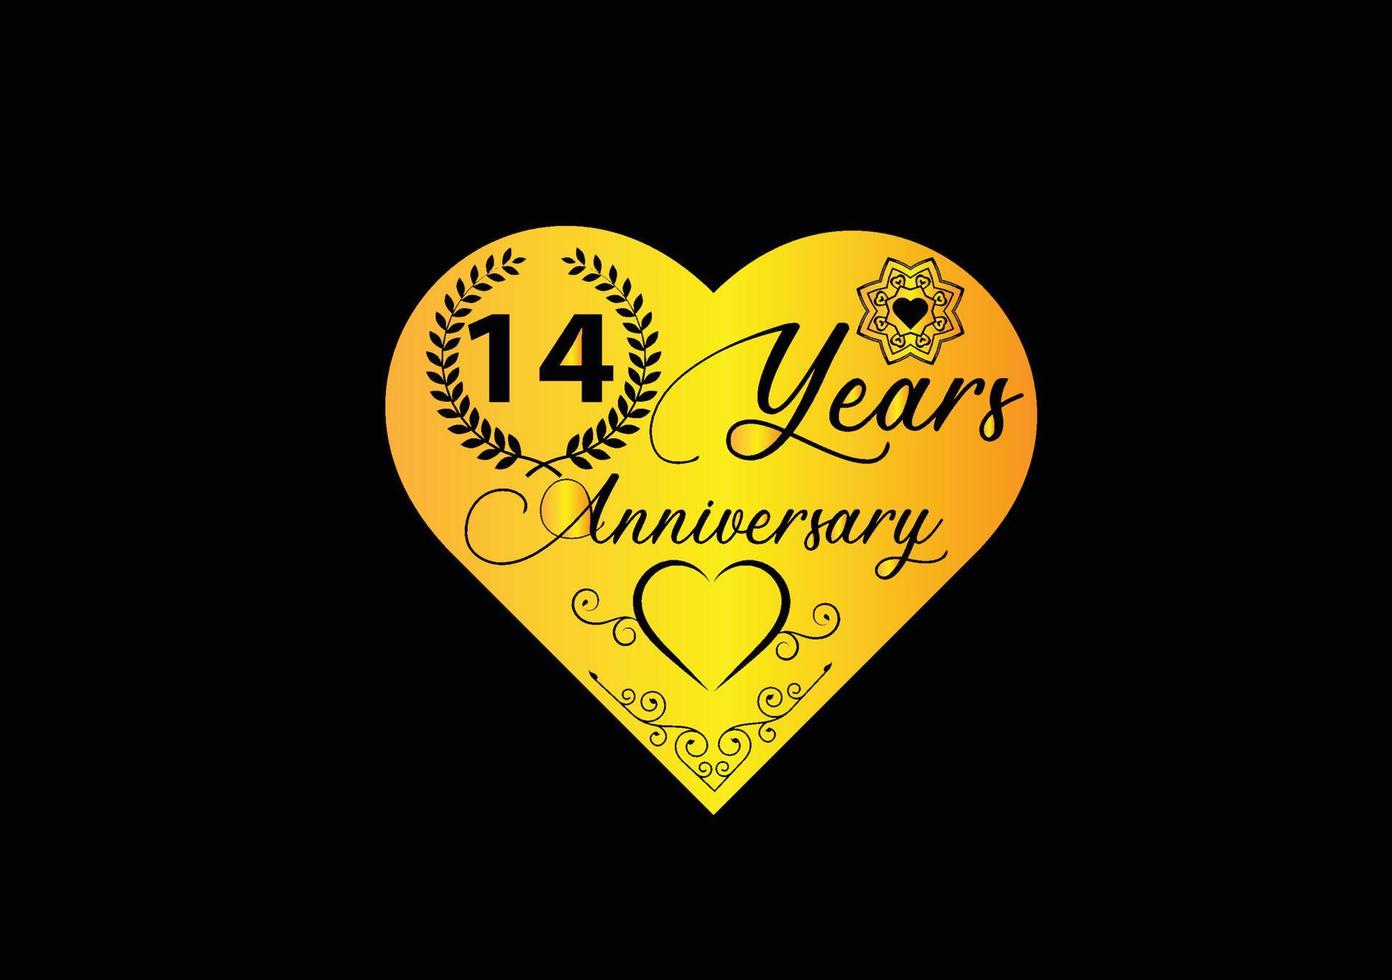 Célébration d'anniversaire de 14 ans avec logo d'amour et conception d'icônes vecteur